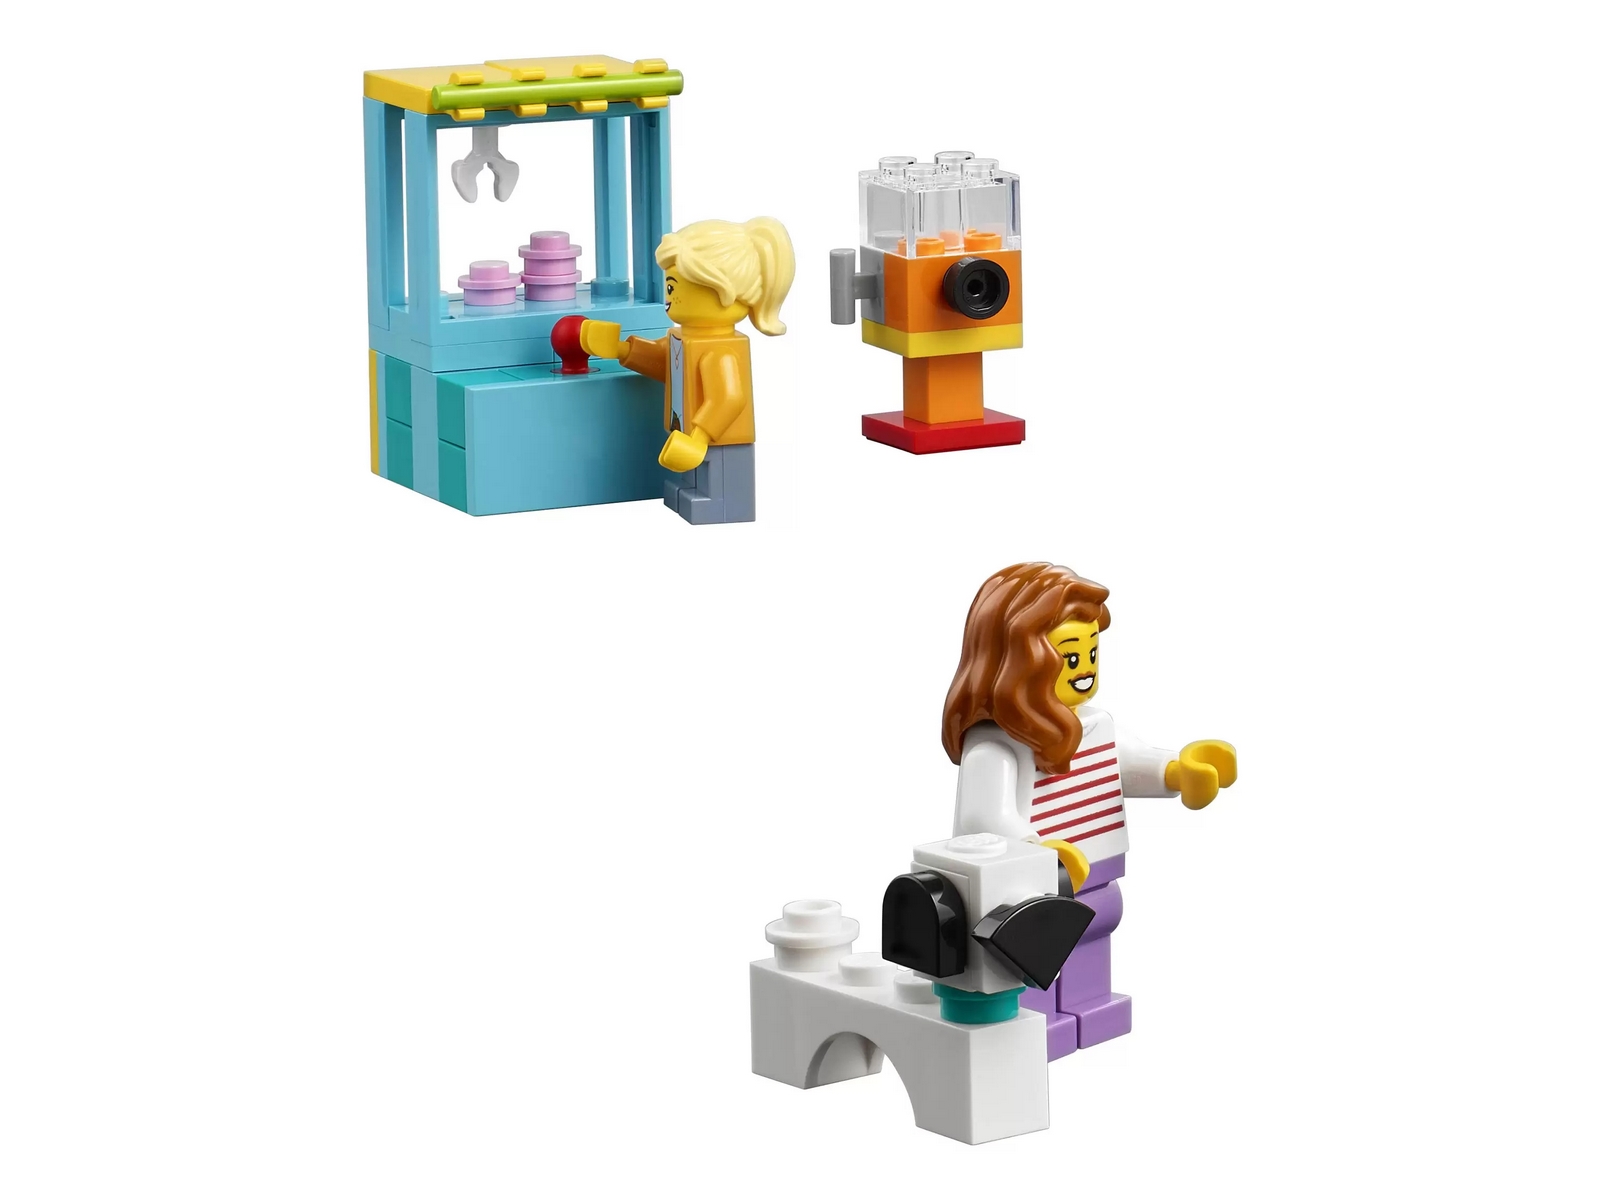 Конструктор LEGO Creator «Колесо обозрения» 31119 / 1002 детали